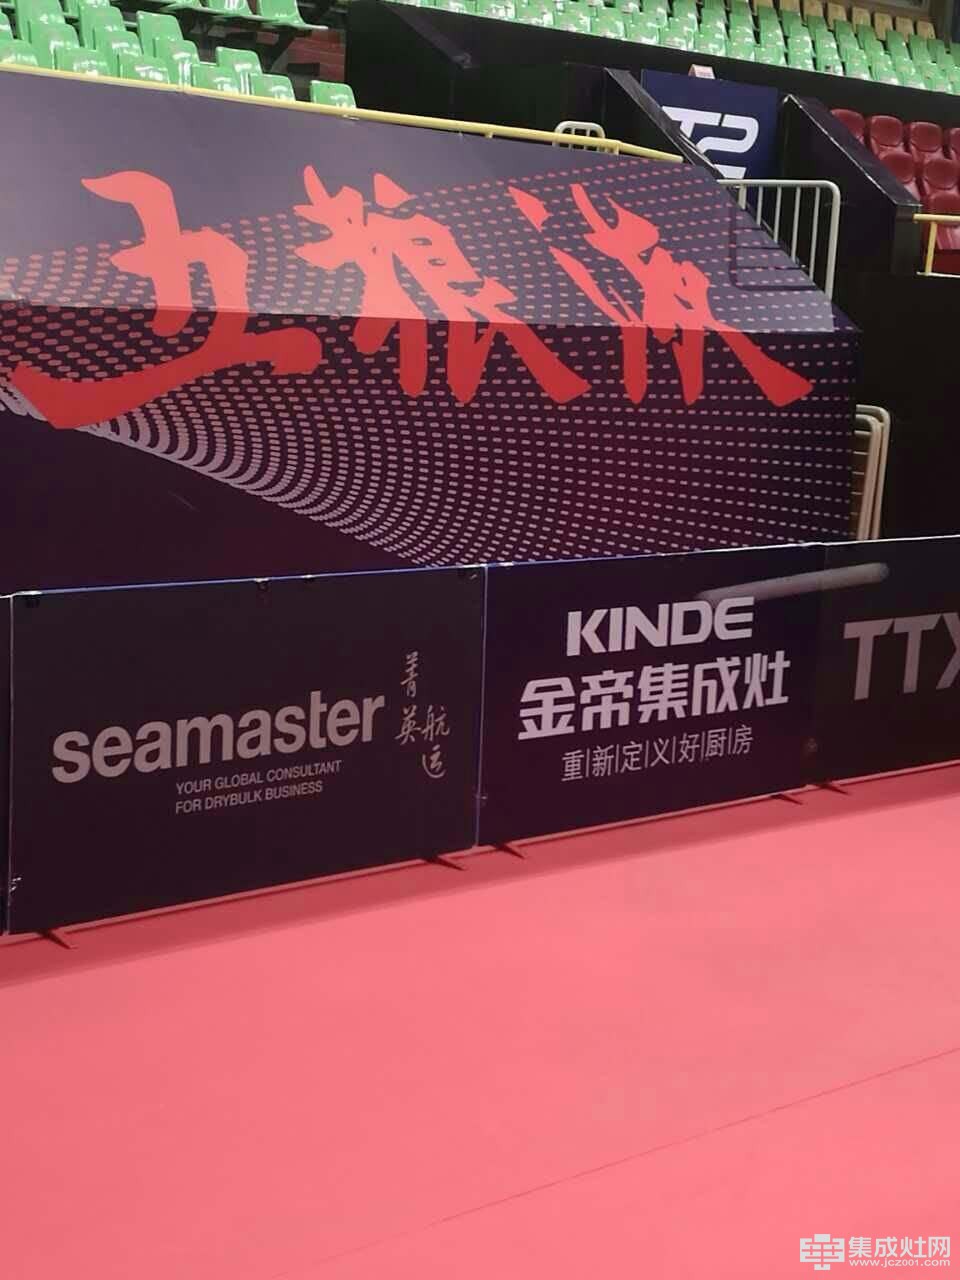 2017中国乒乓球公开赛 金帝集成灶行业独家冠名品牌